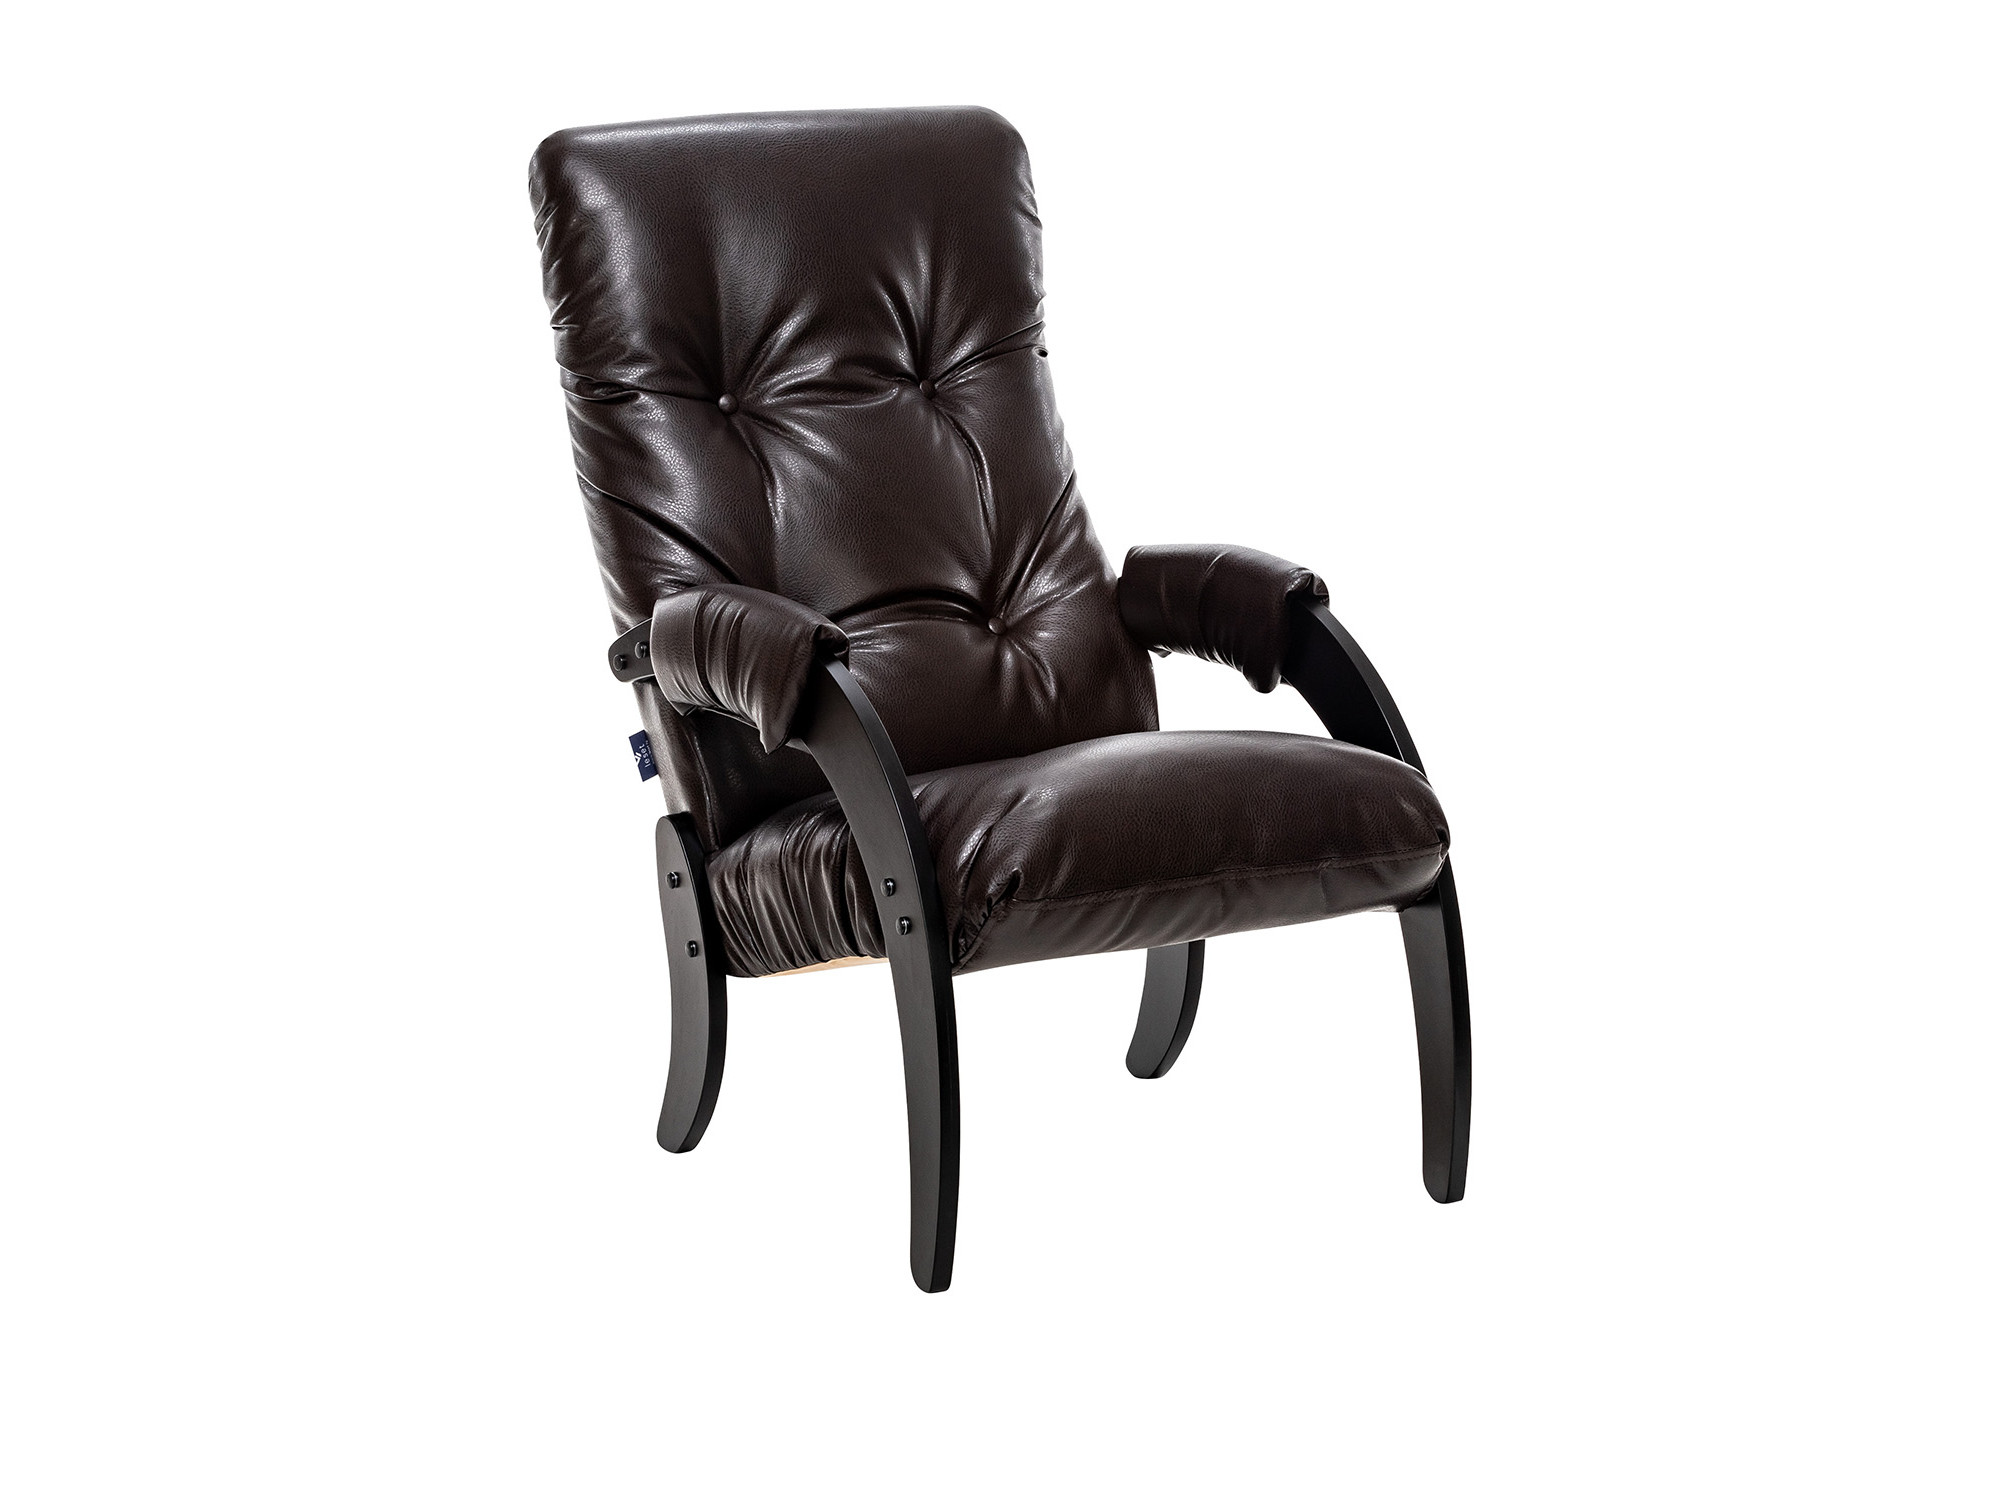 Кресло для отдыха Модель 61 Венге текстура, к/з Varana DK-BROWN MebelVia Varan кресло качалка модель 67 венге к з polaris beige mebelvia венге экокожа фанера шпон лак